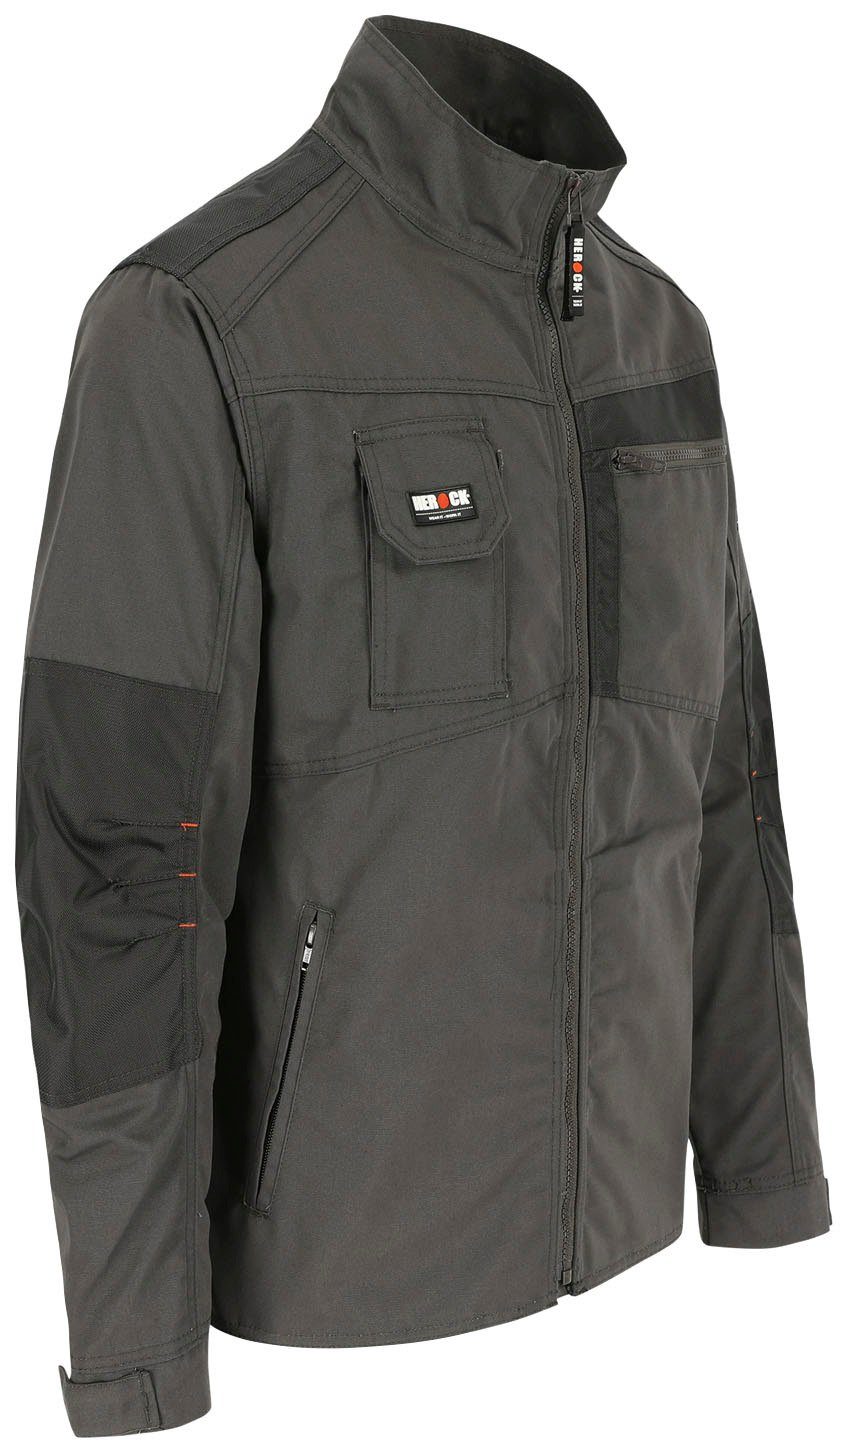 Arbeitsjacke verstellbare Bündchen 7 robust Herock grau Wasserabweisend - Anzar Jacke - - Taschen